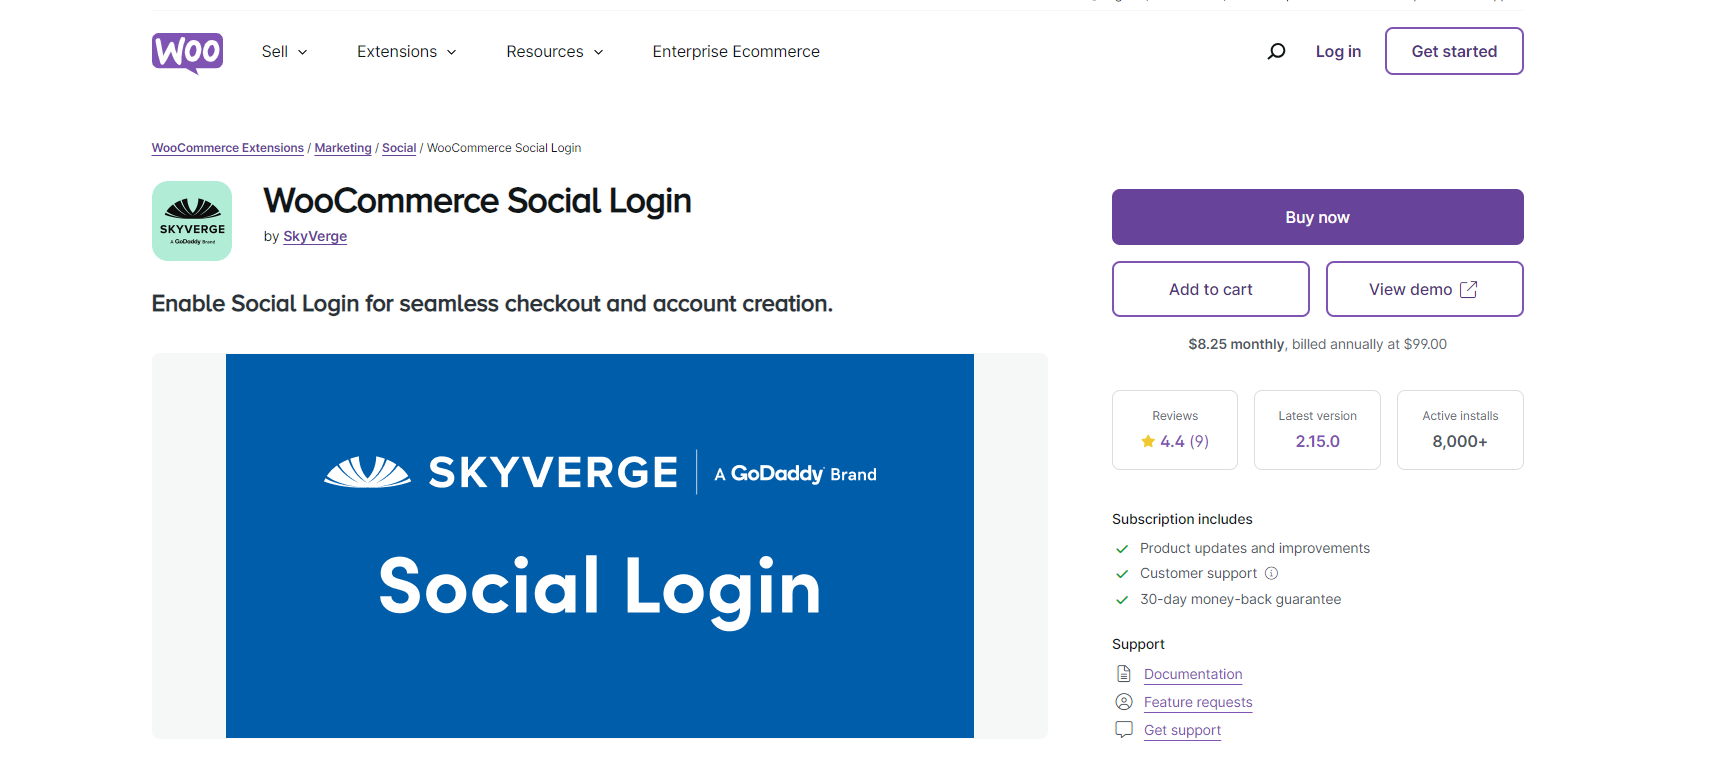 WooCommerce Social Login by SkyVerge